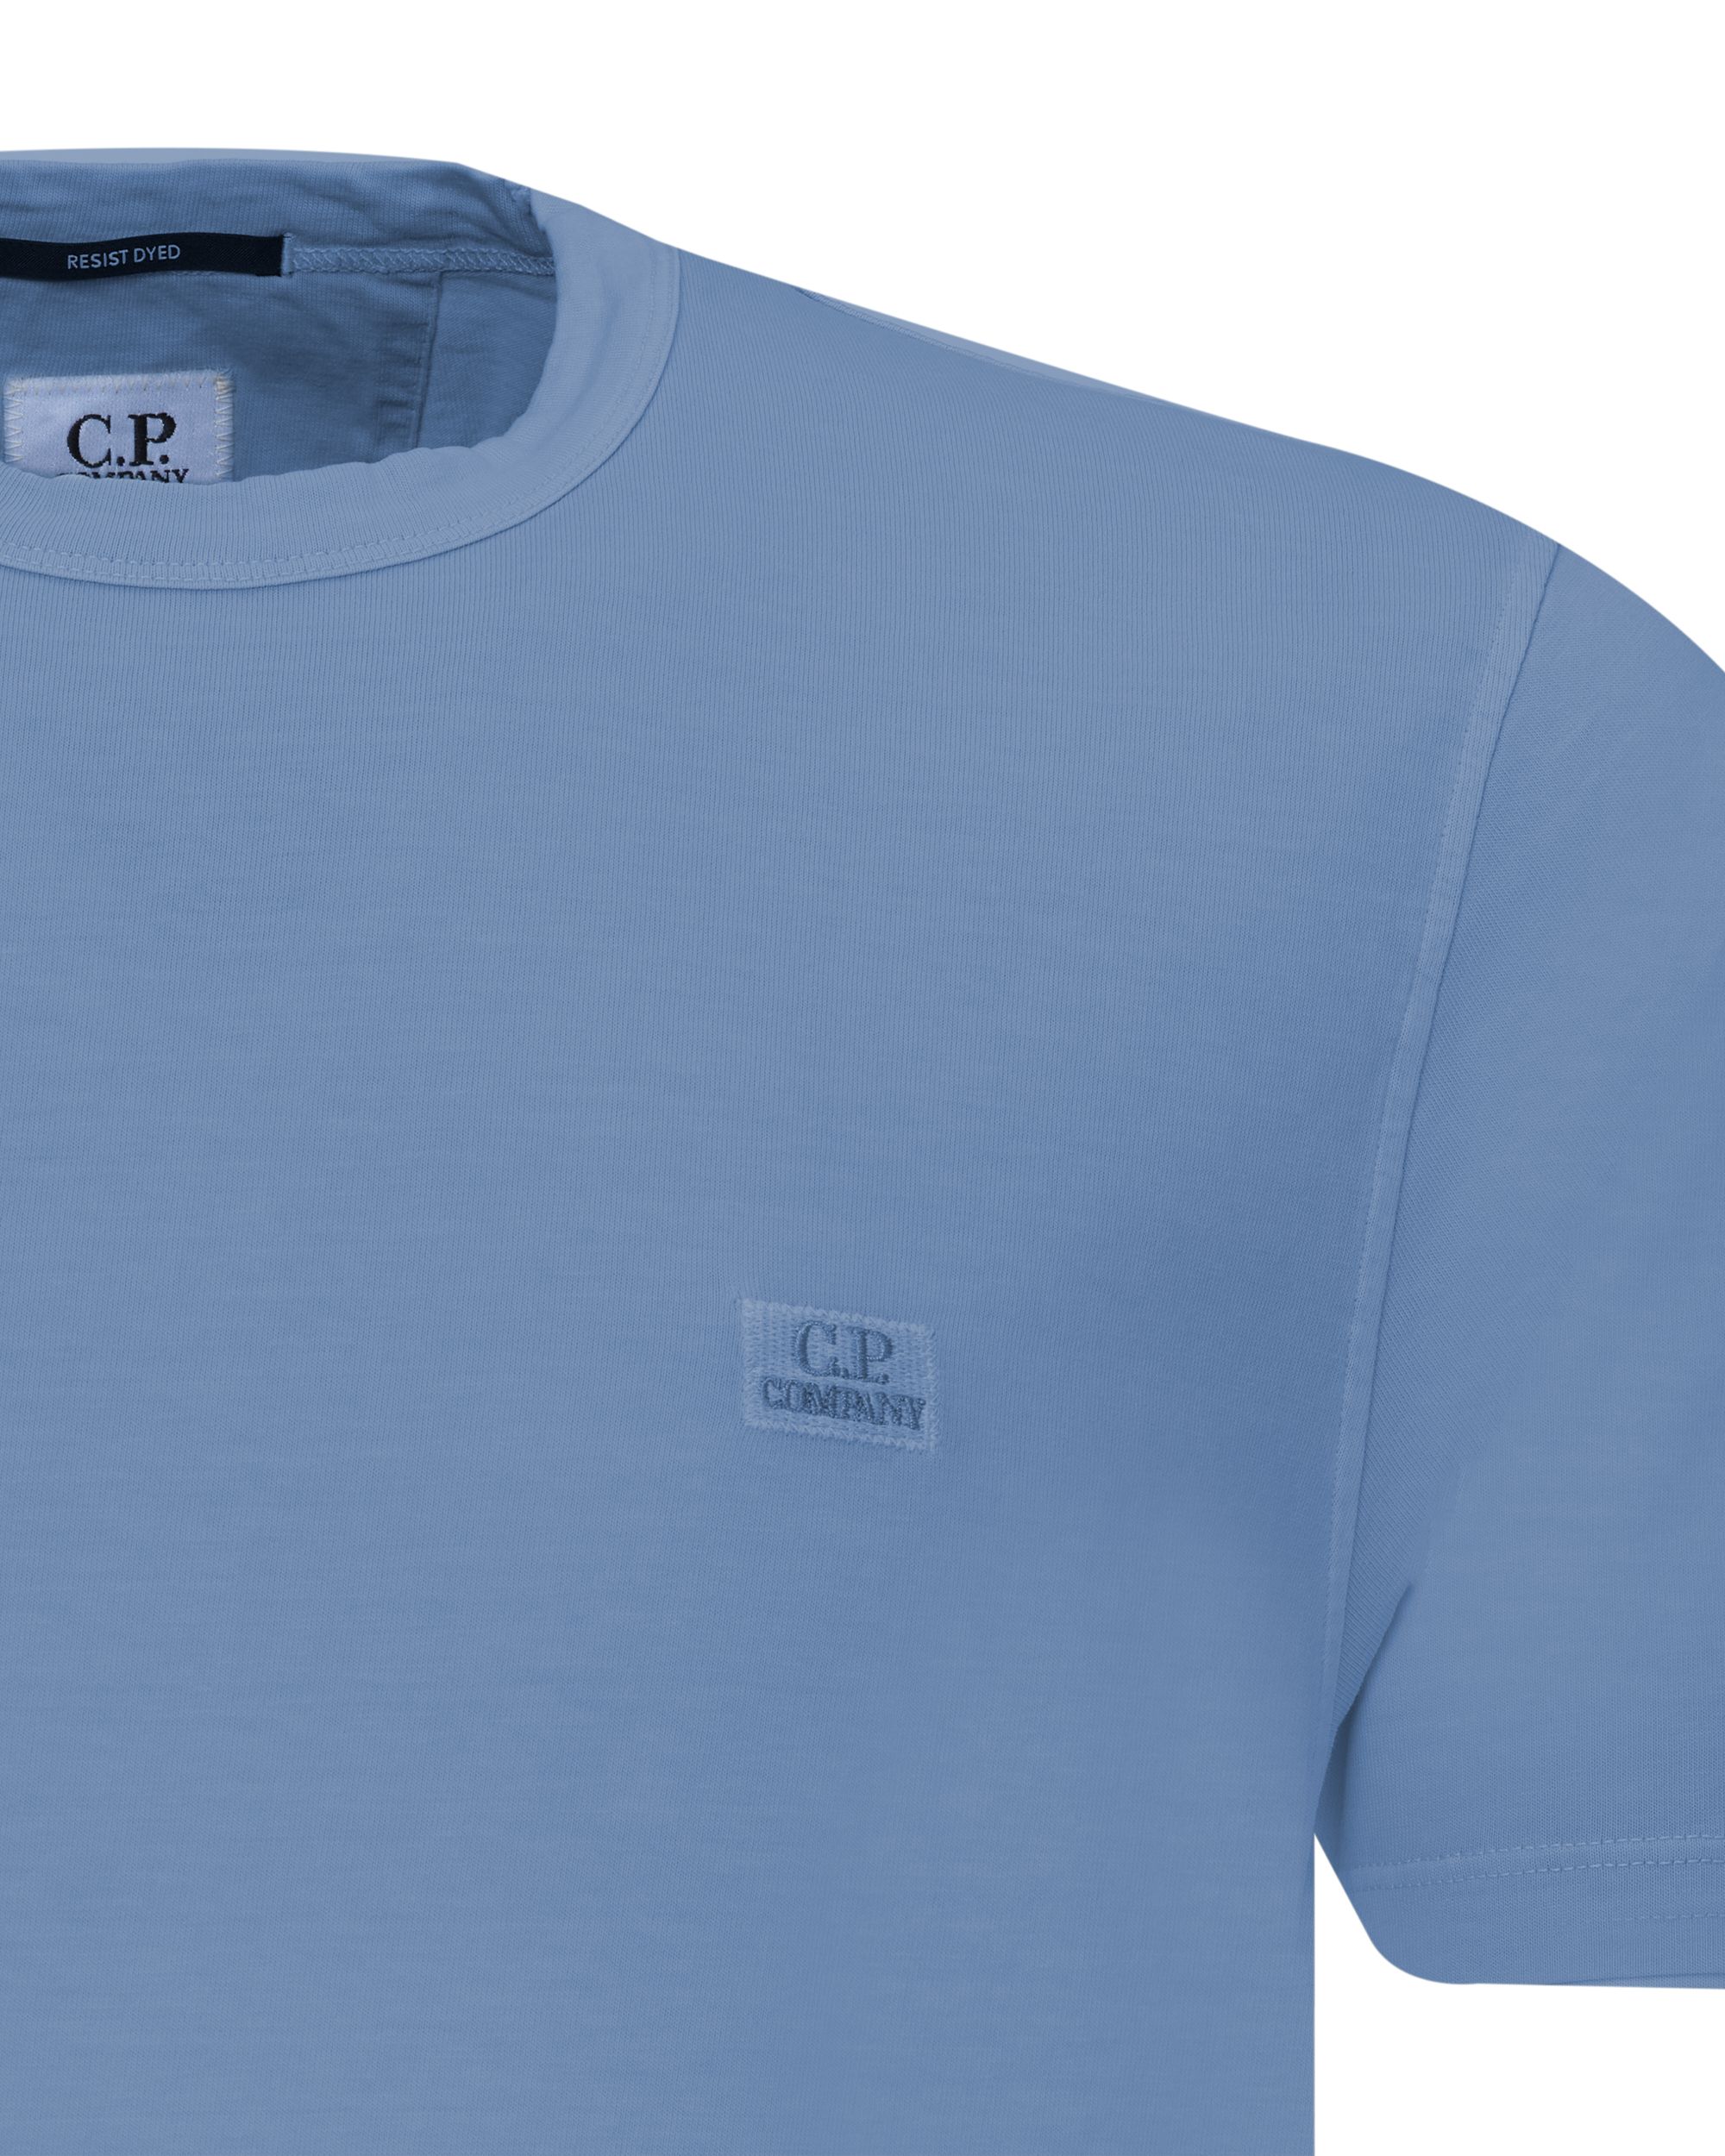 C.P Company T-shirt KM Blauw 078719-001-L